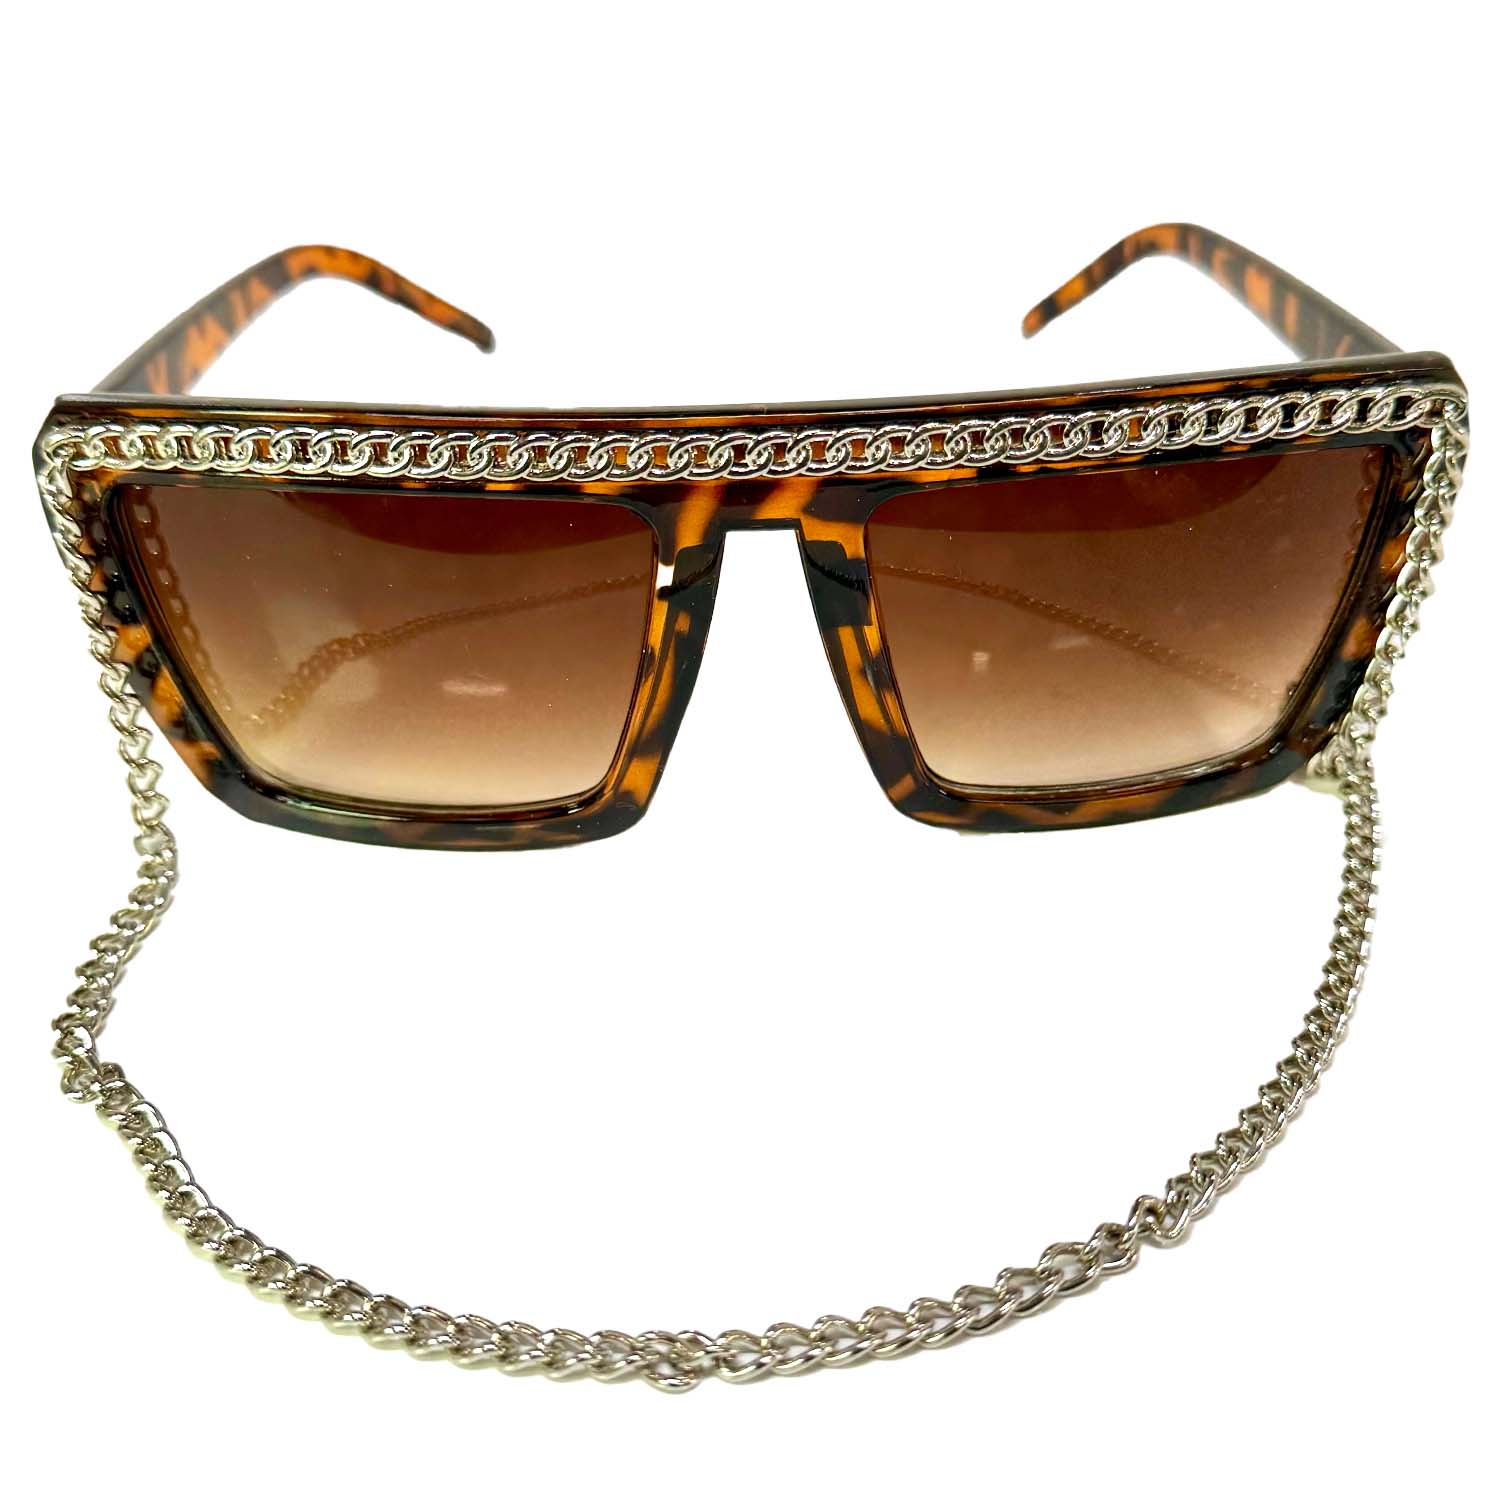 Oversized Retro Fashion Sunglasses with Silver Chain